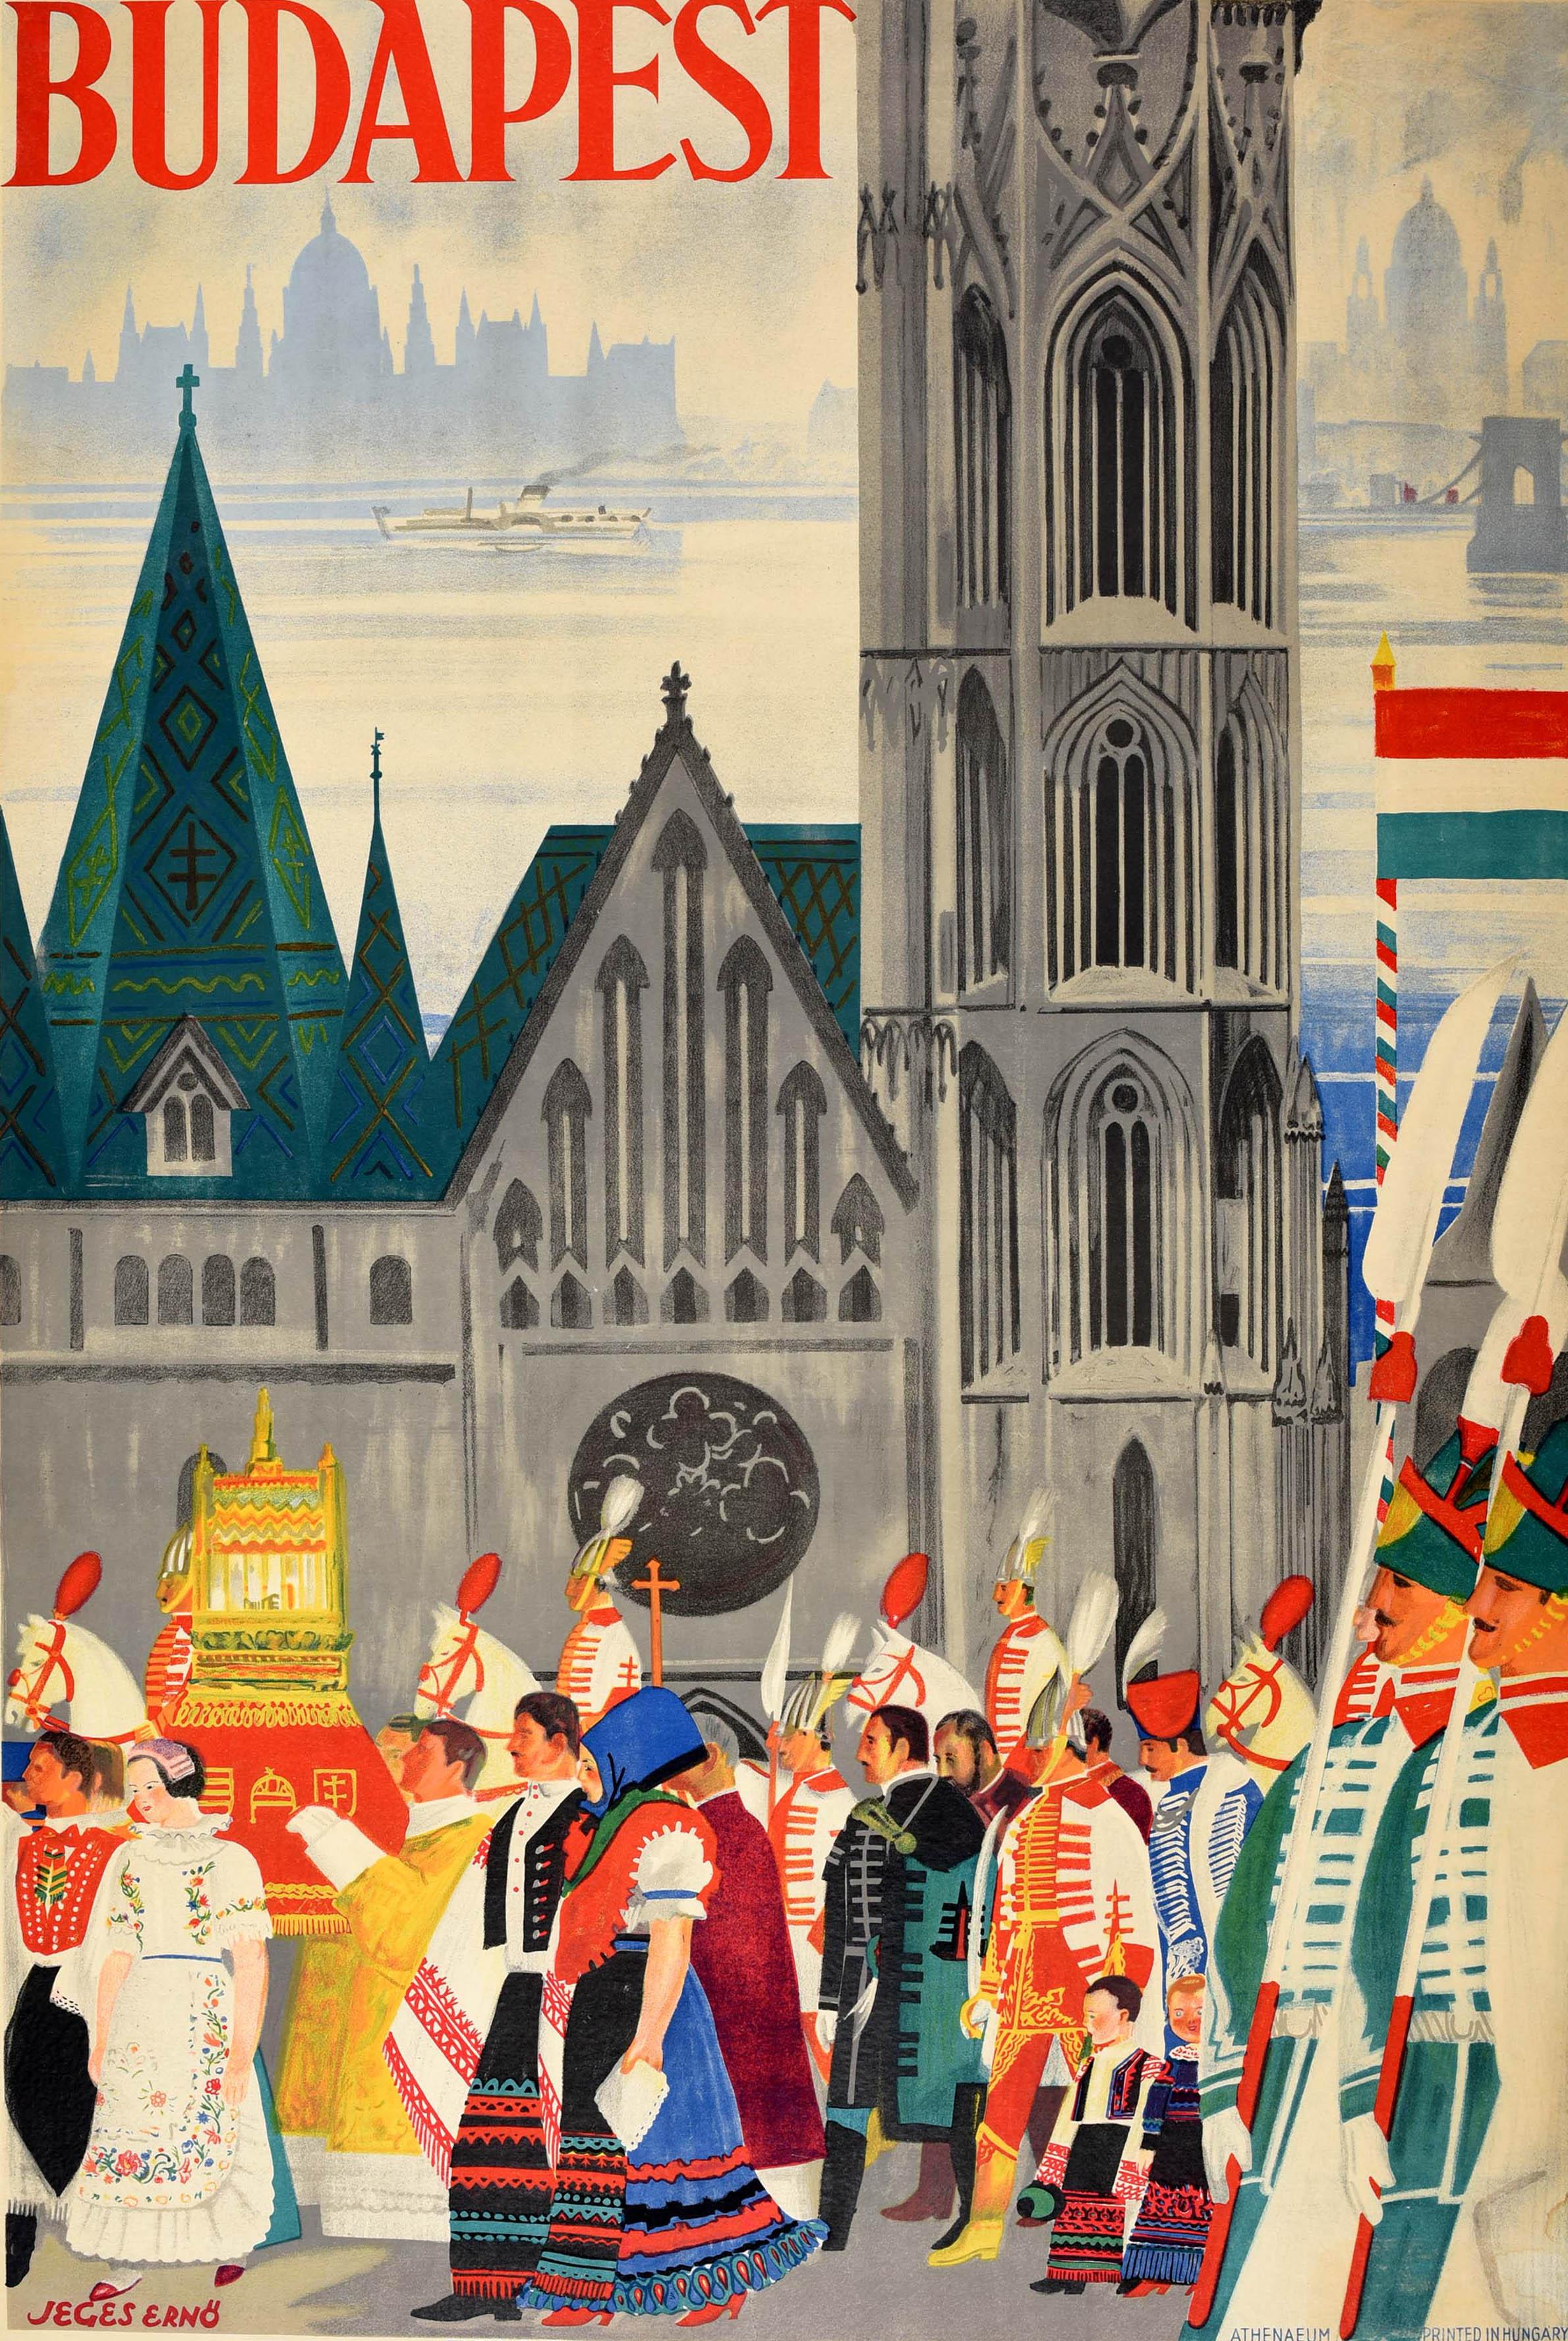 Original Vintage-Reiseplakat für Budapest mit einer großartigen Illustration von Jeges Erno (1898-1956), die einen Festumzug von Menschen in traditioneller Kleidung zeigt, die an der historischen Matthiaskirche aus dem 11. Jahrhundert auf dem